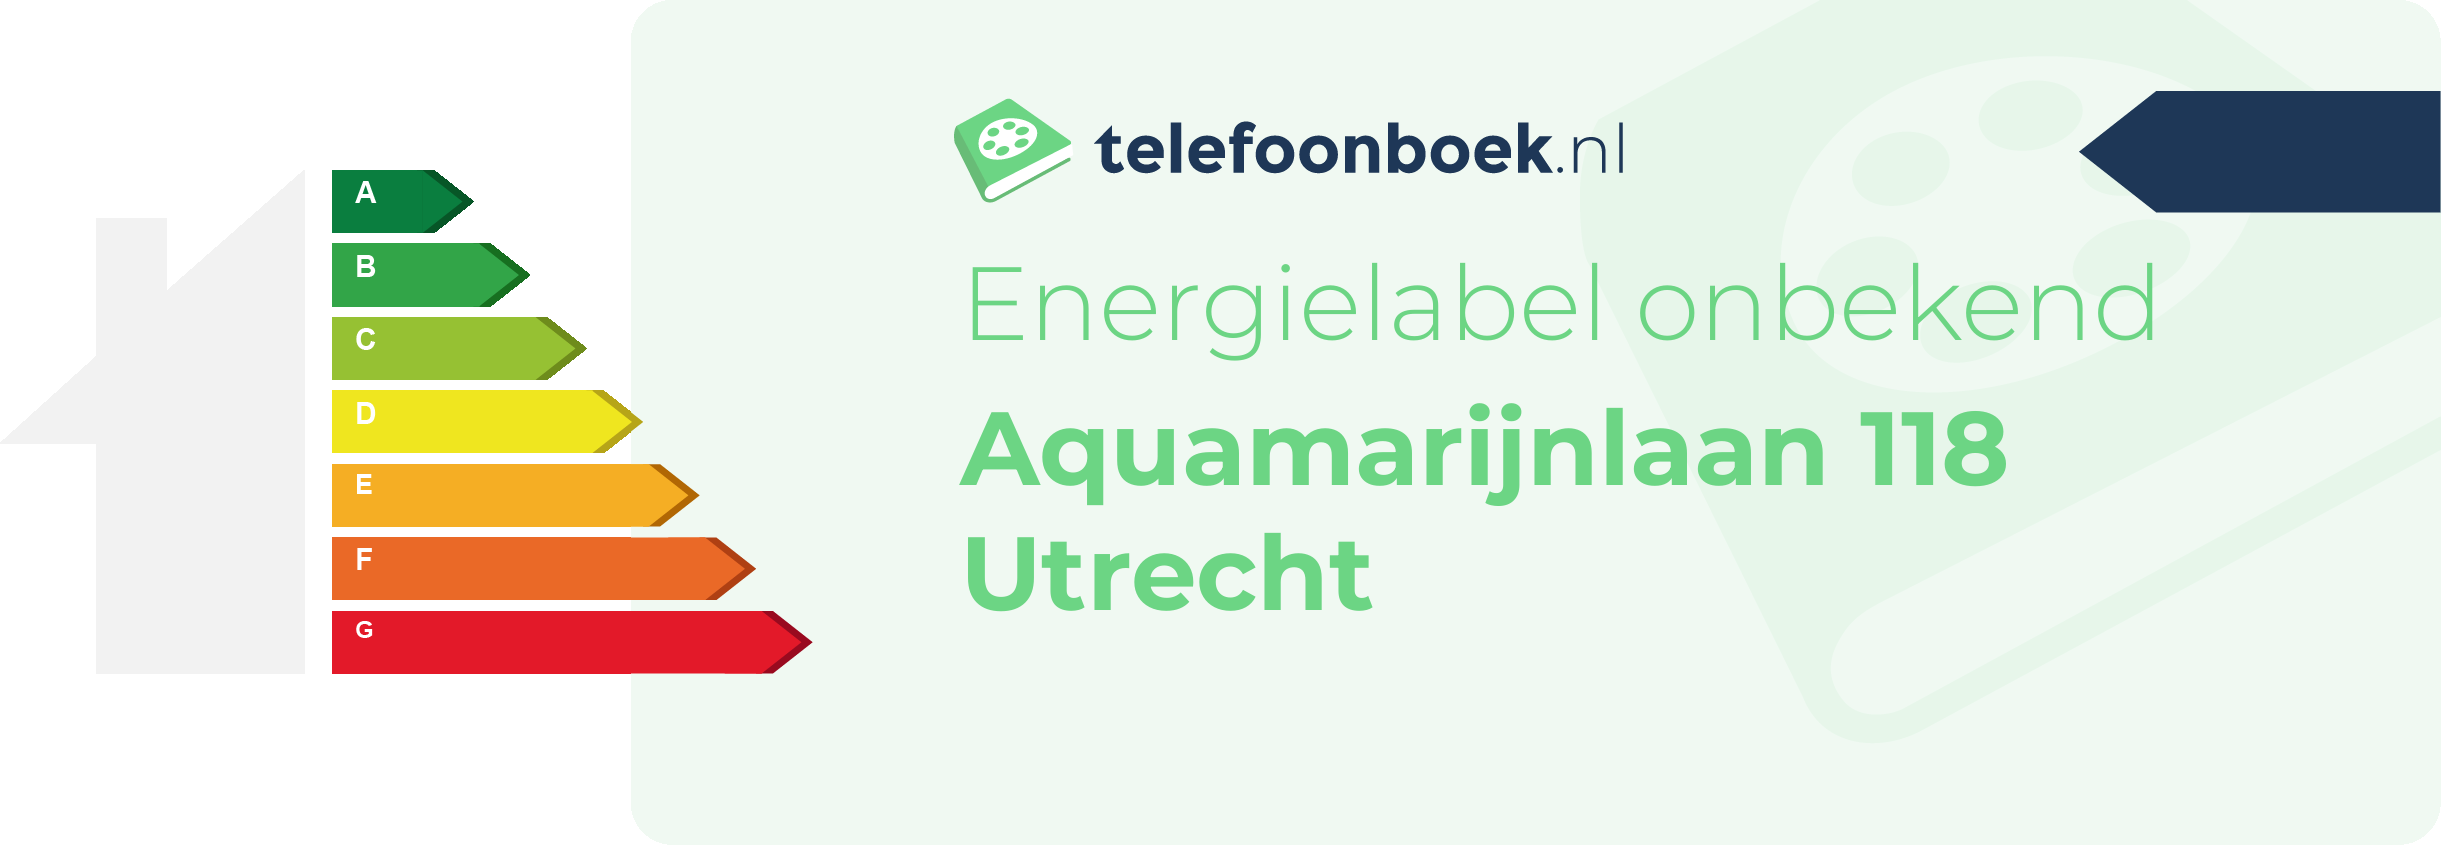 Energielabel Aquamarijnlaan 118 Utrecht